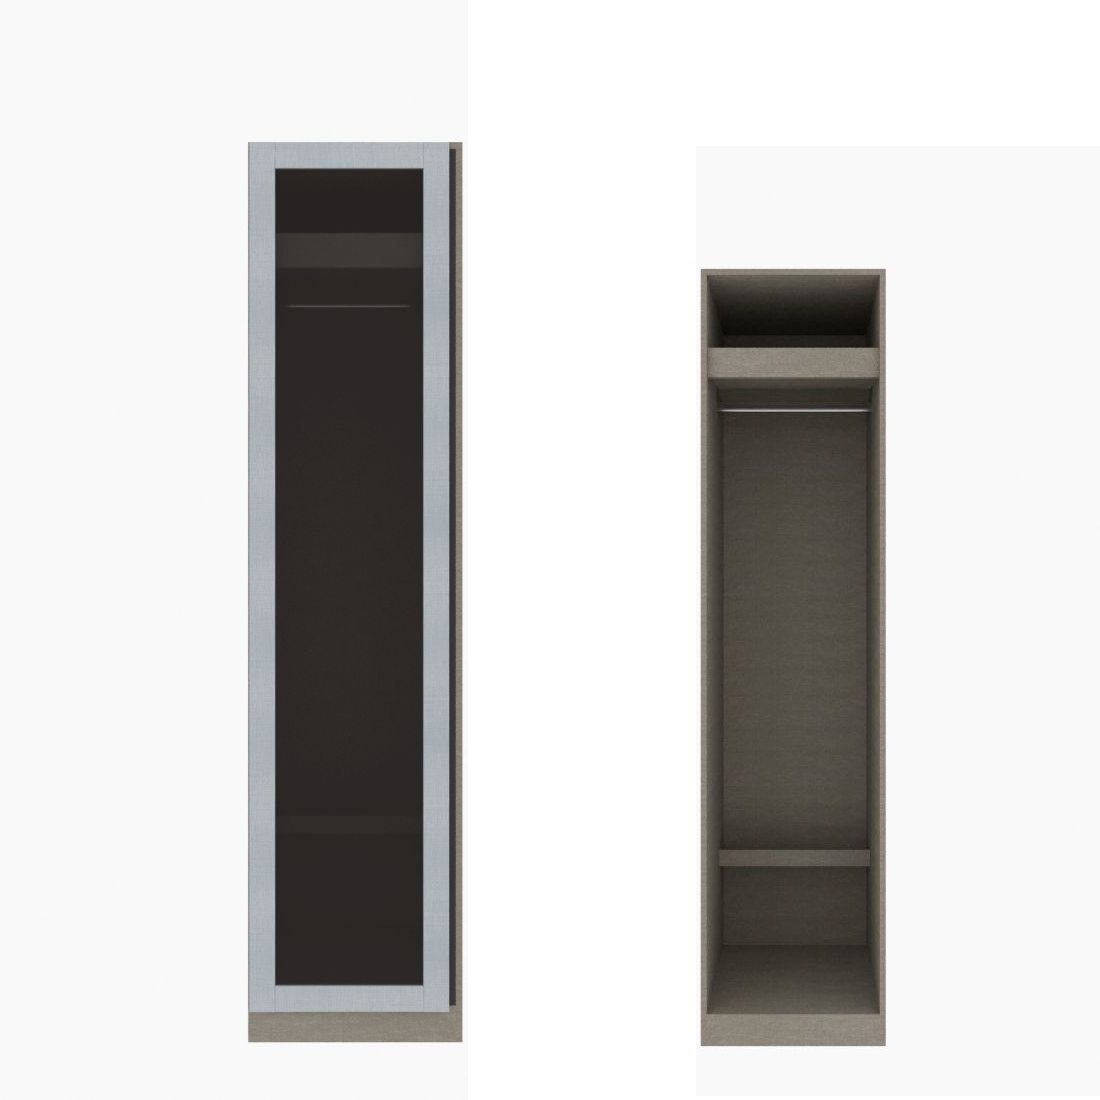 ตู้เสื้อผ้า ราวแขวนโล่ง OP-J (หน้าบานเปิดซ้าย) ขนาด 50 ซม. รุ่น Blox สีขาวลายผ้า&กระจกชาดำ01